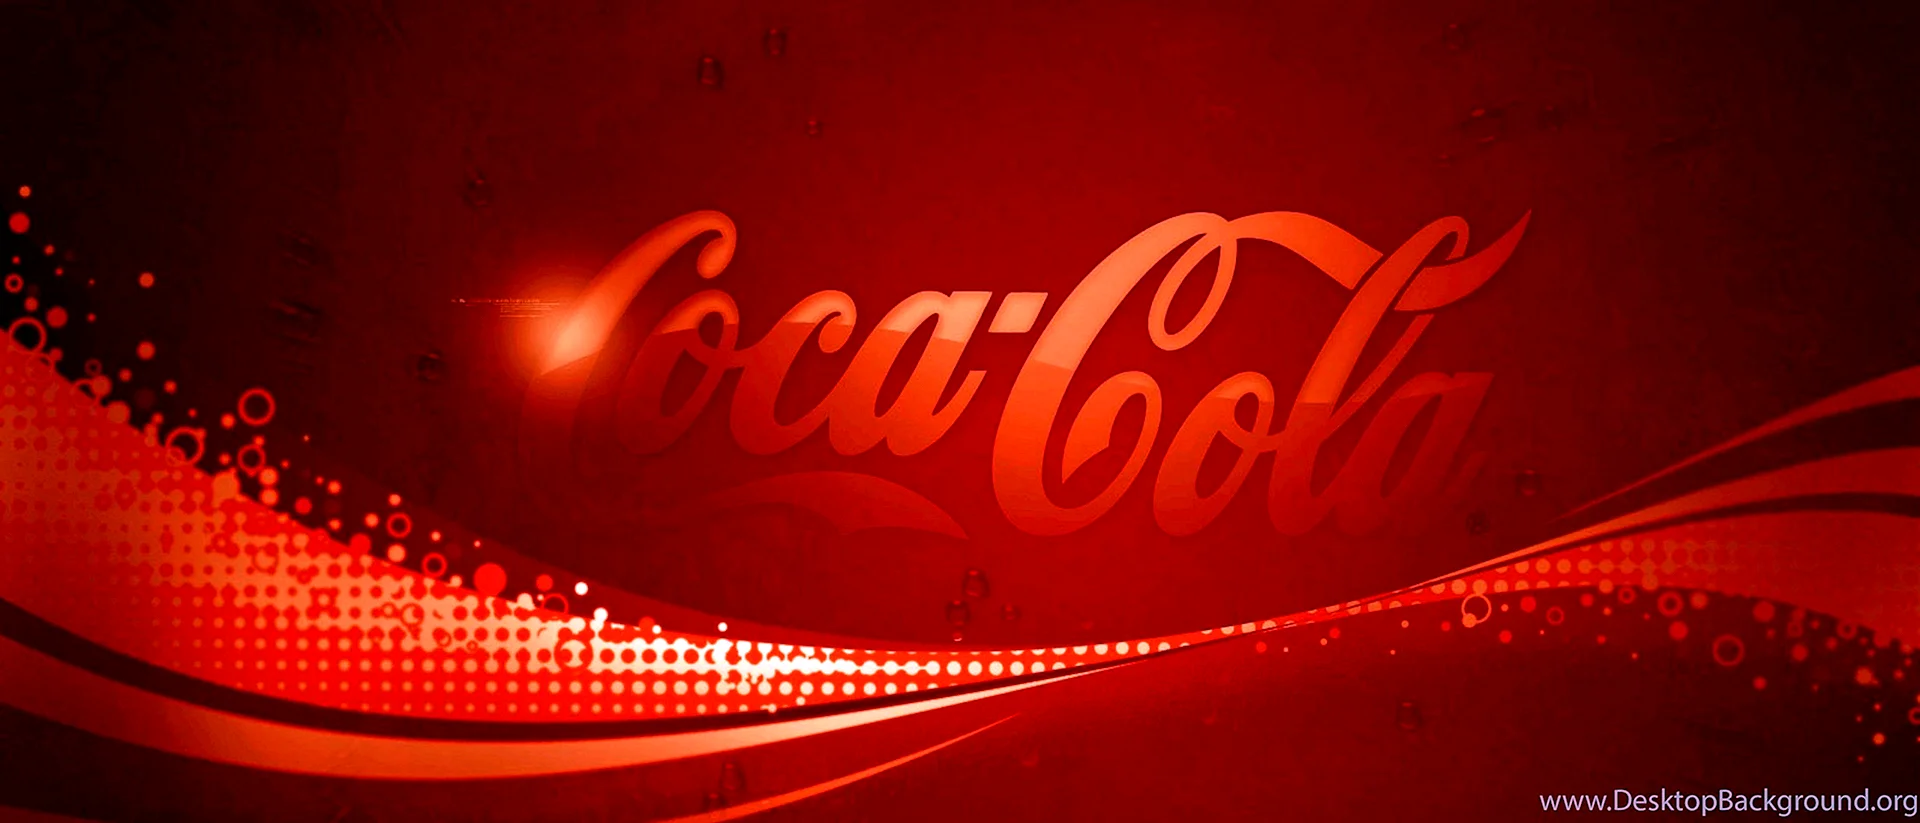 Coca Cola Background Wallpaper